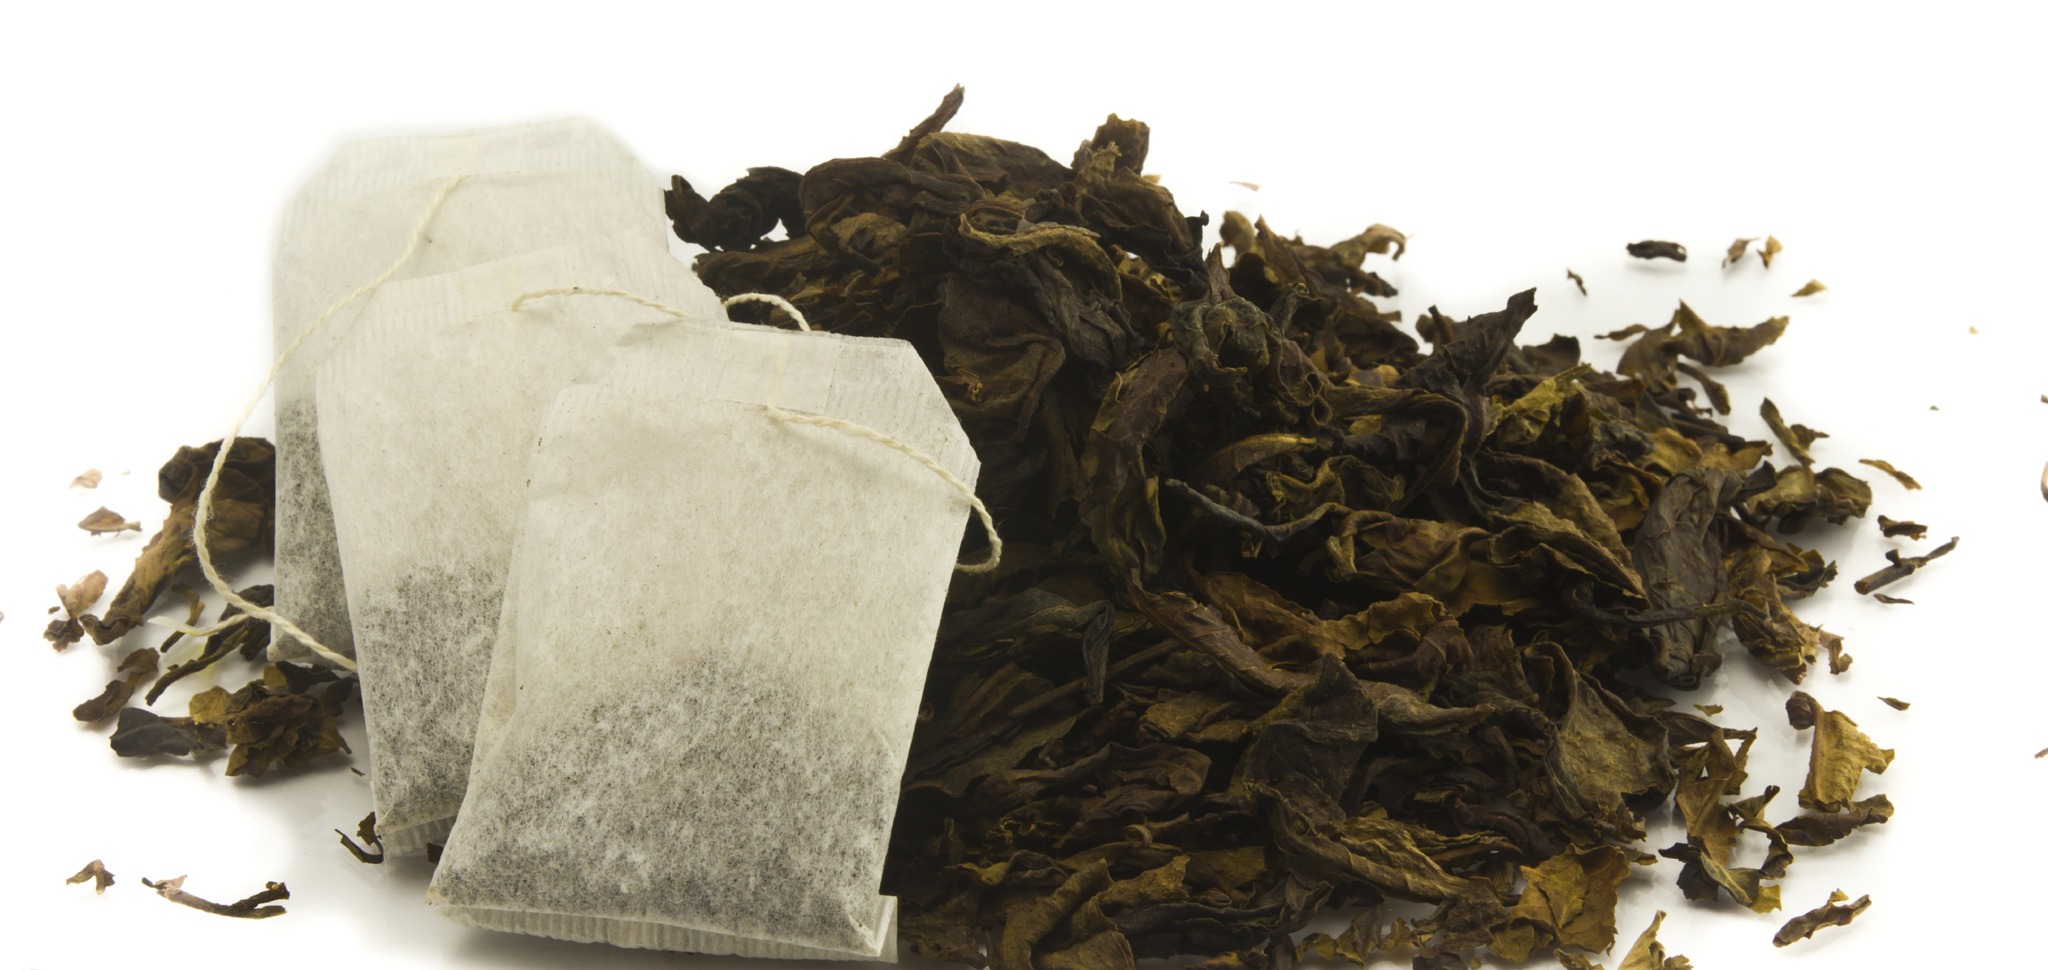 Loose Leaf Tea vs Tea Bags